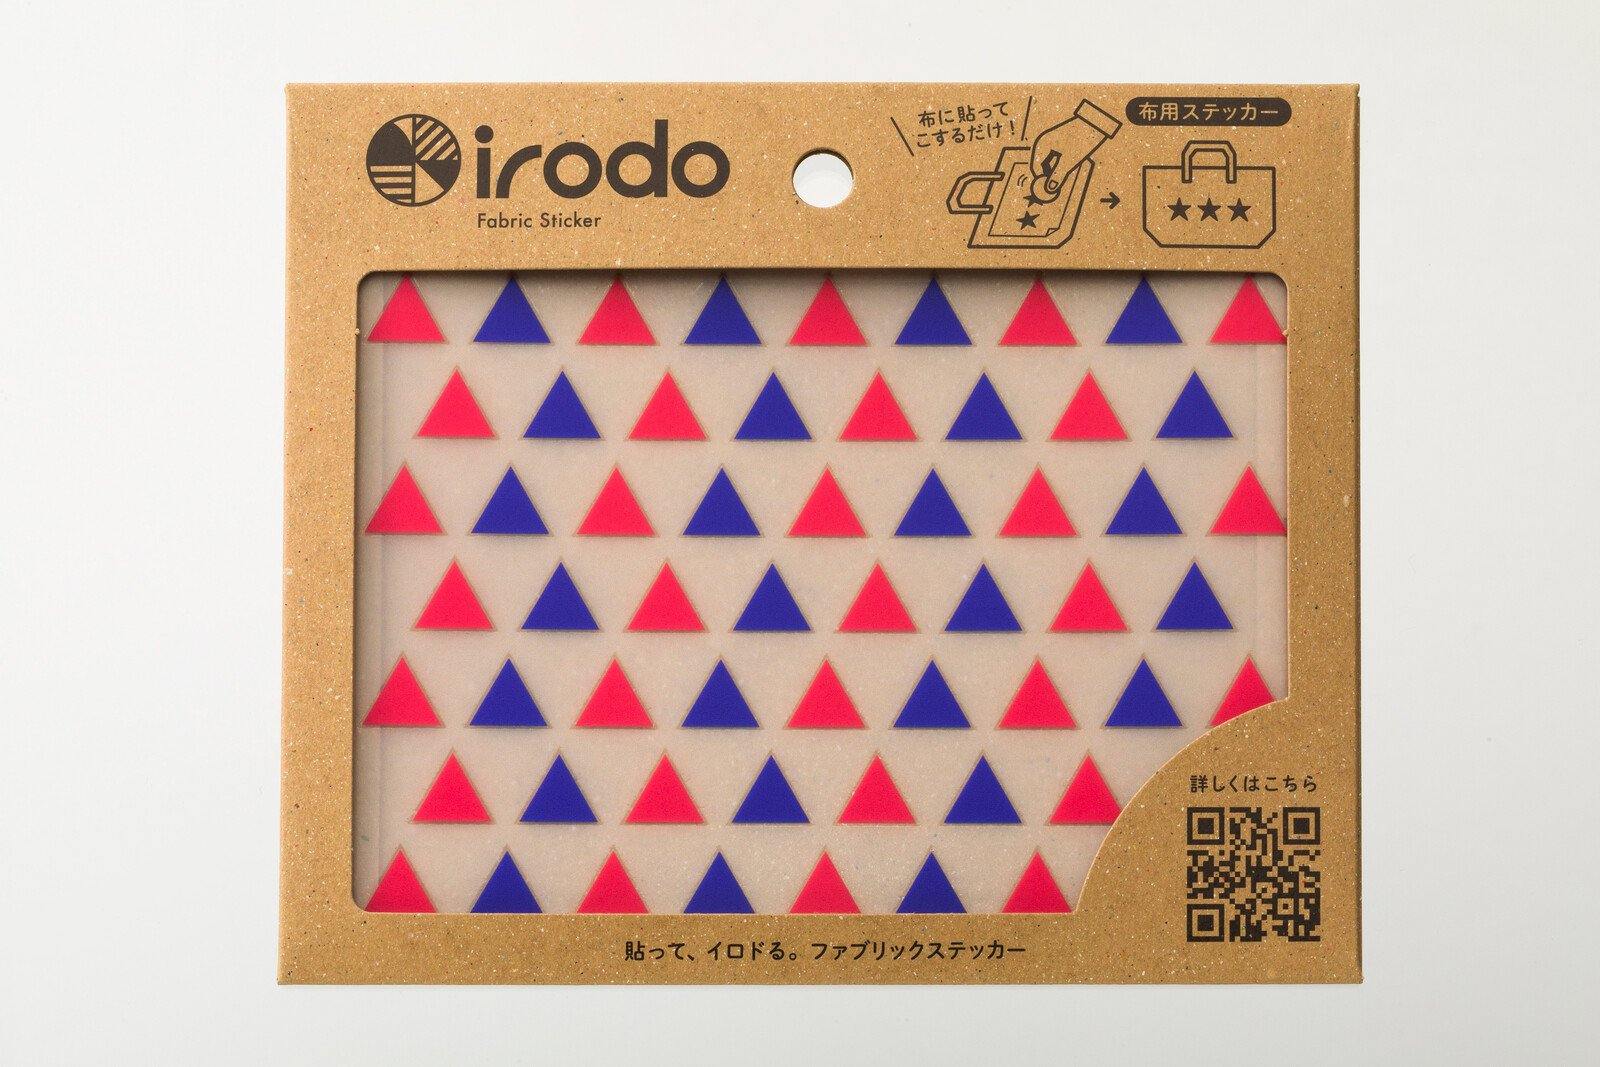 Irodo Fabric Decorating Transfer Sticker - Triangles Red & Blue | papermindstationery.com